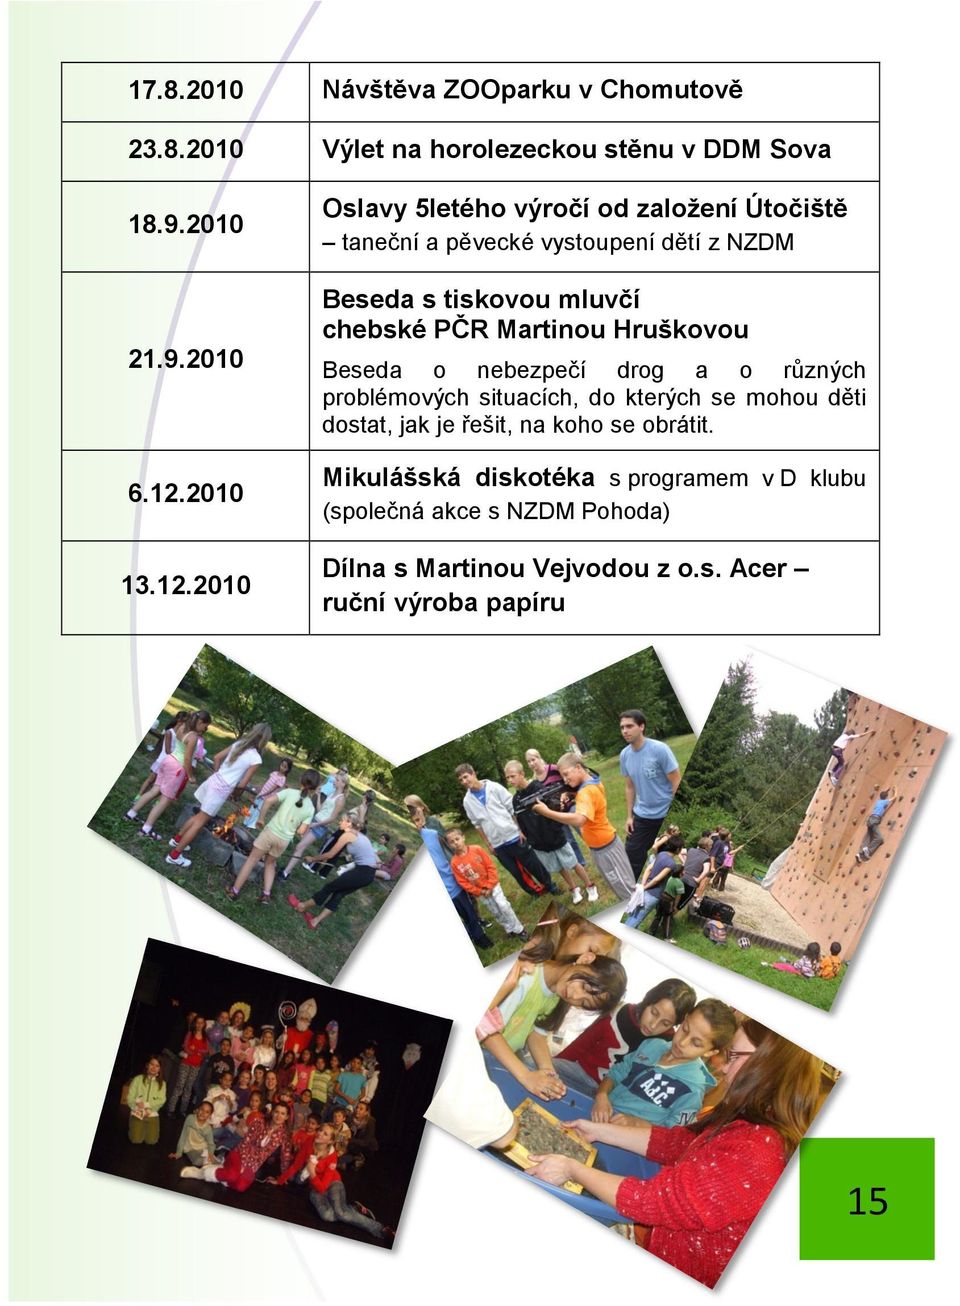 2010 Oslavy 5letého výročí od založení Útočiště taneční a pěvecké vystoupení dětí z NZDM Beseda s tiskovou mluvčí chebské PČR